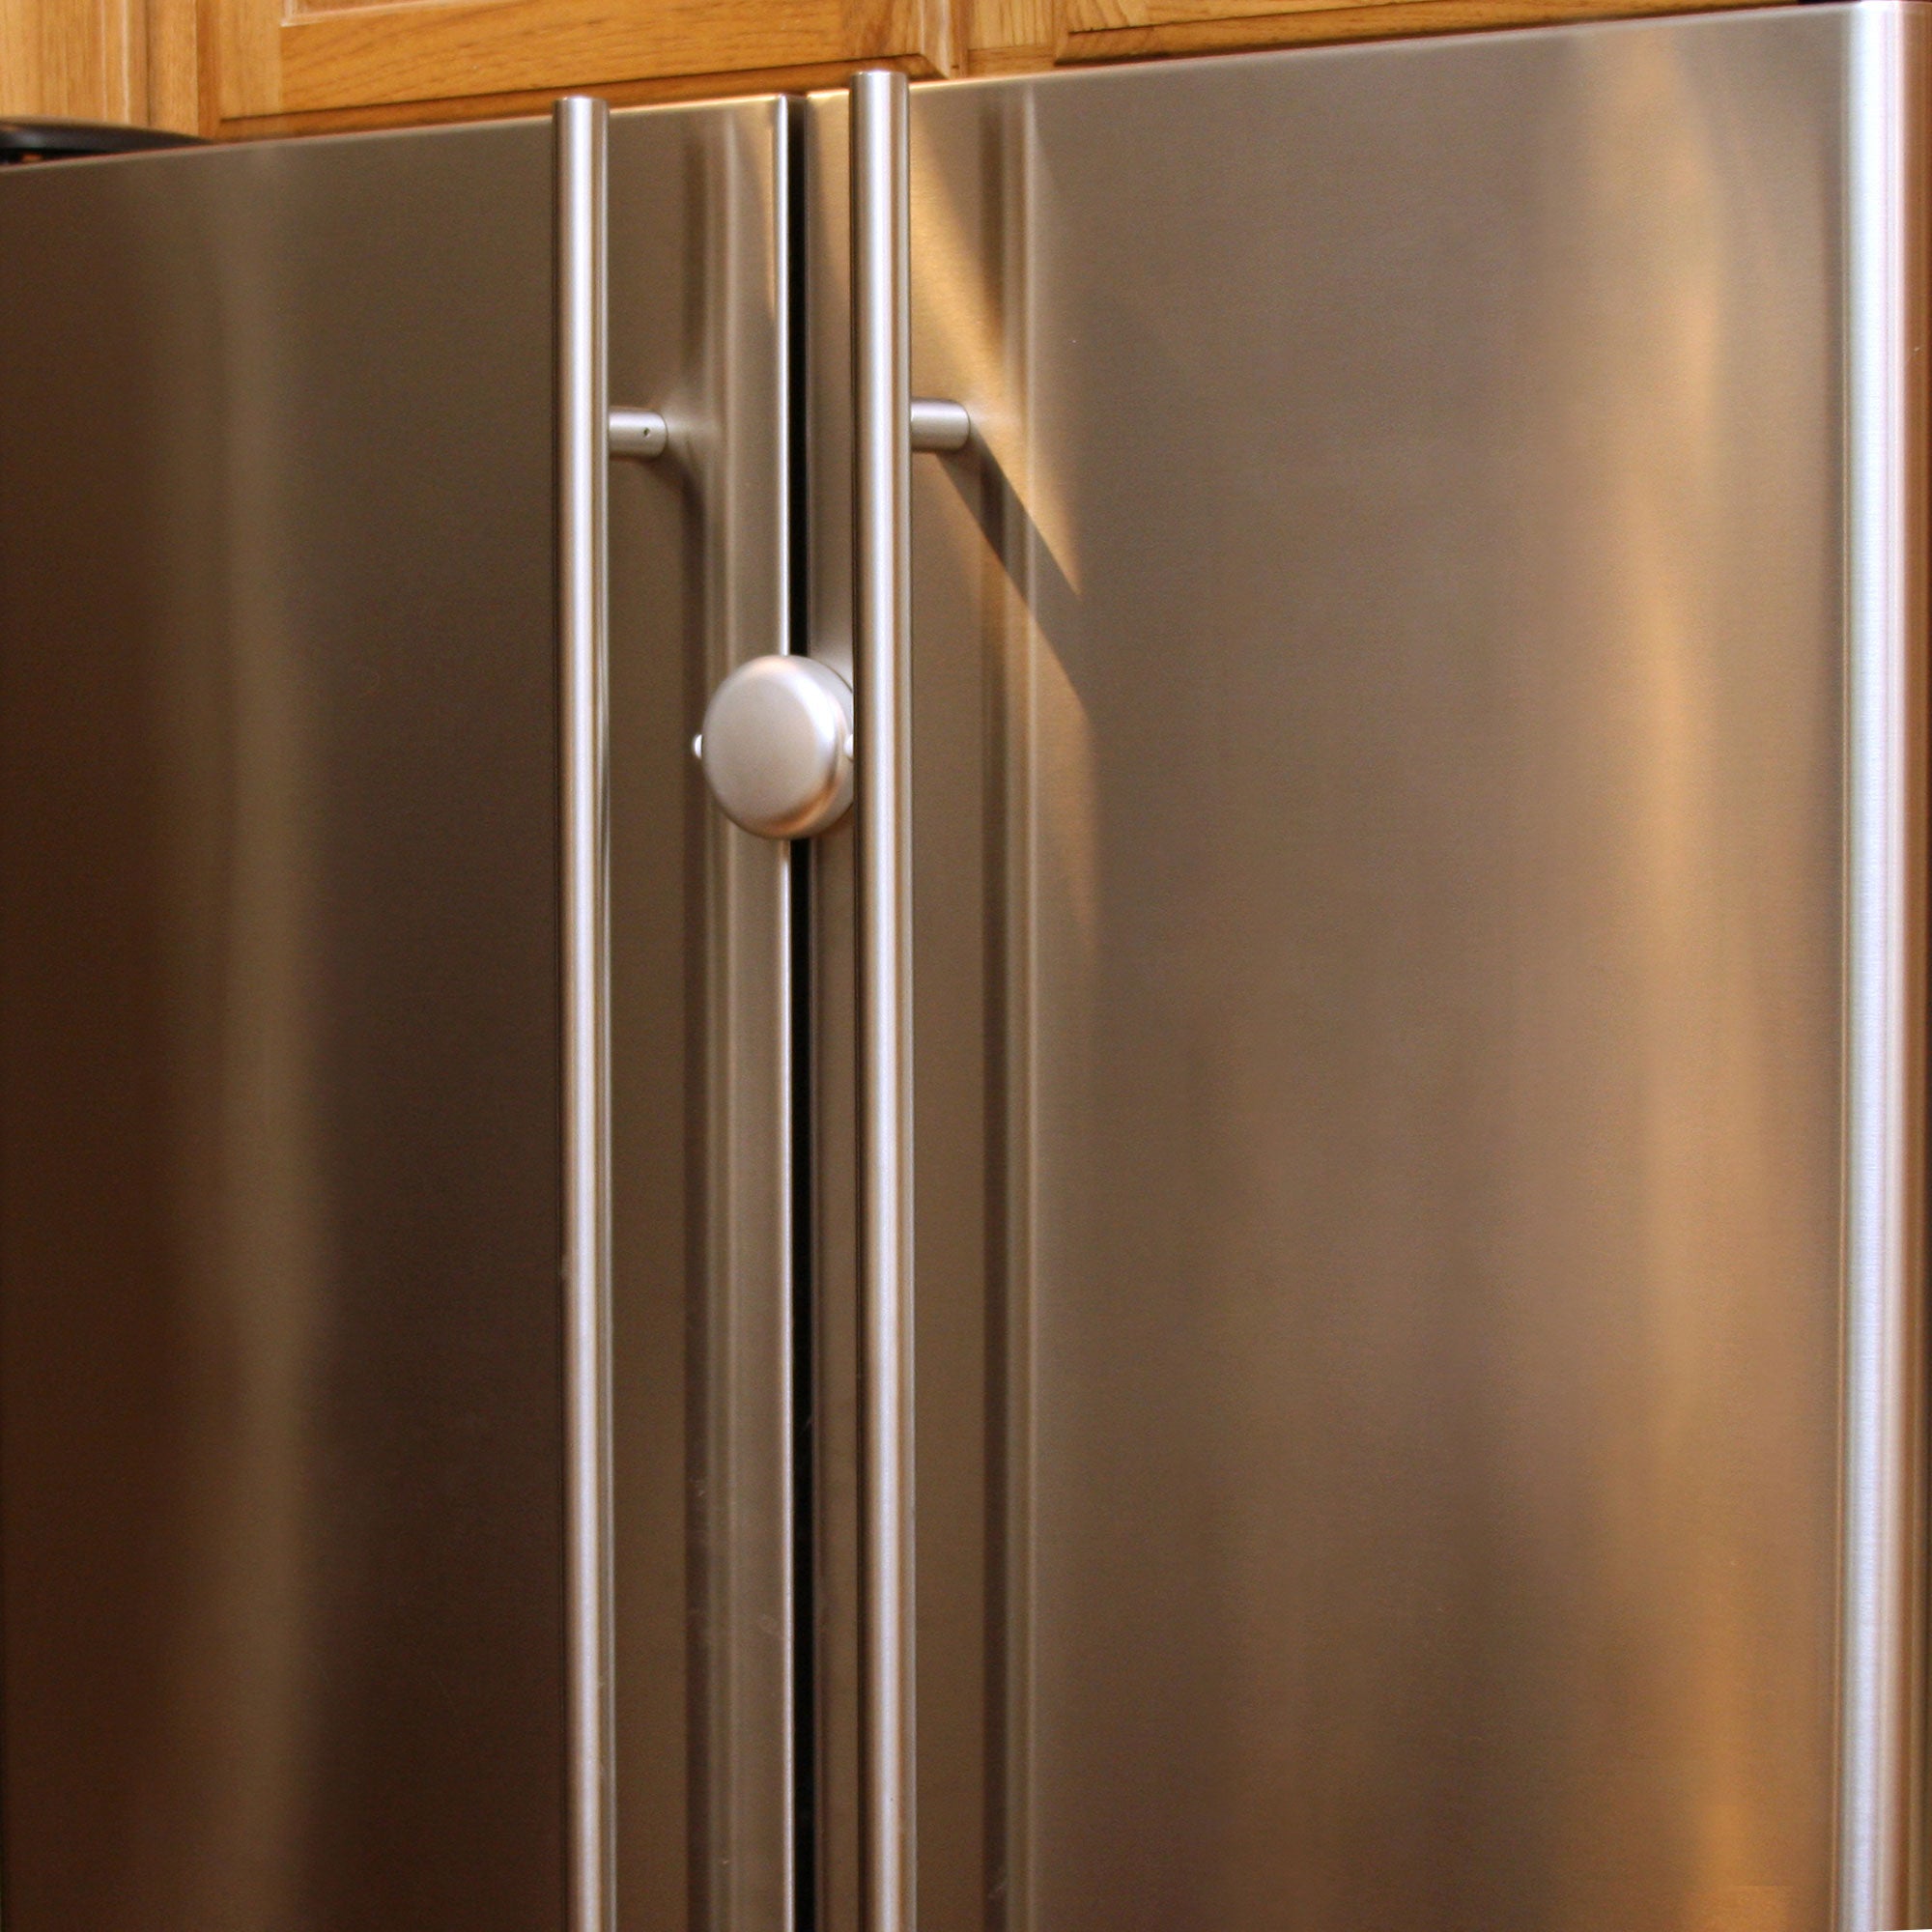 Bran 4 -piece Refrigerator Lock, Freezer Lock, Children's Safety Lock With  Kitchen Adhesive, Working